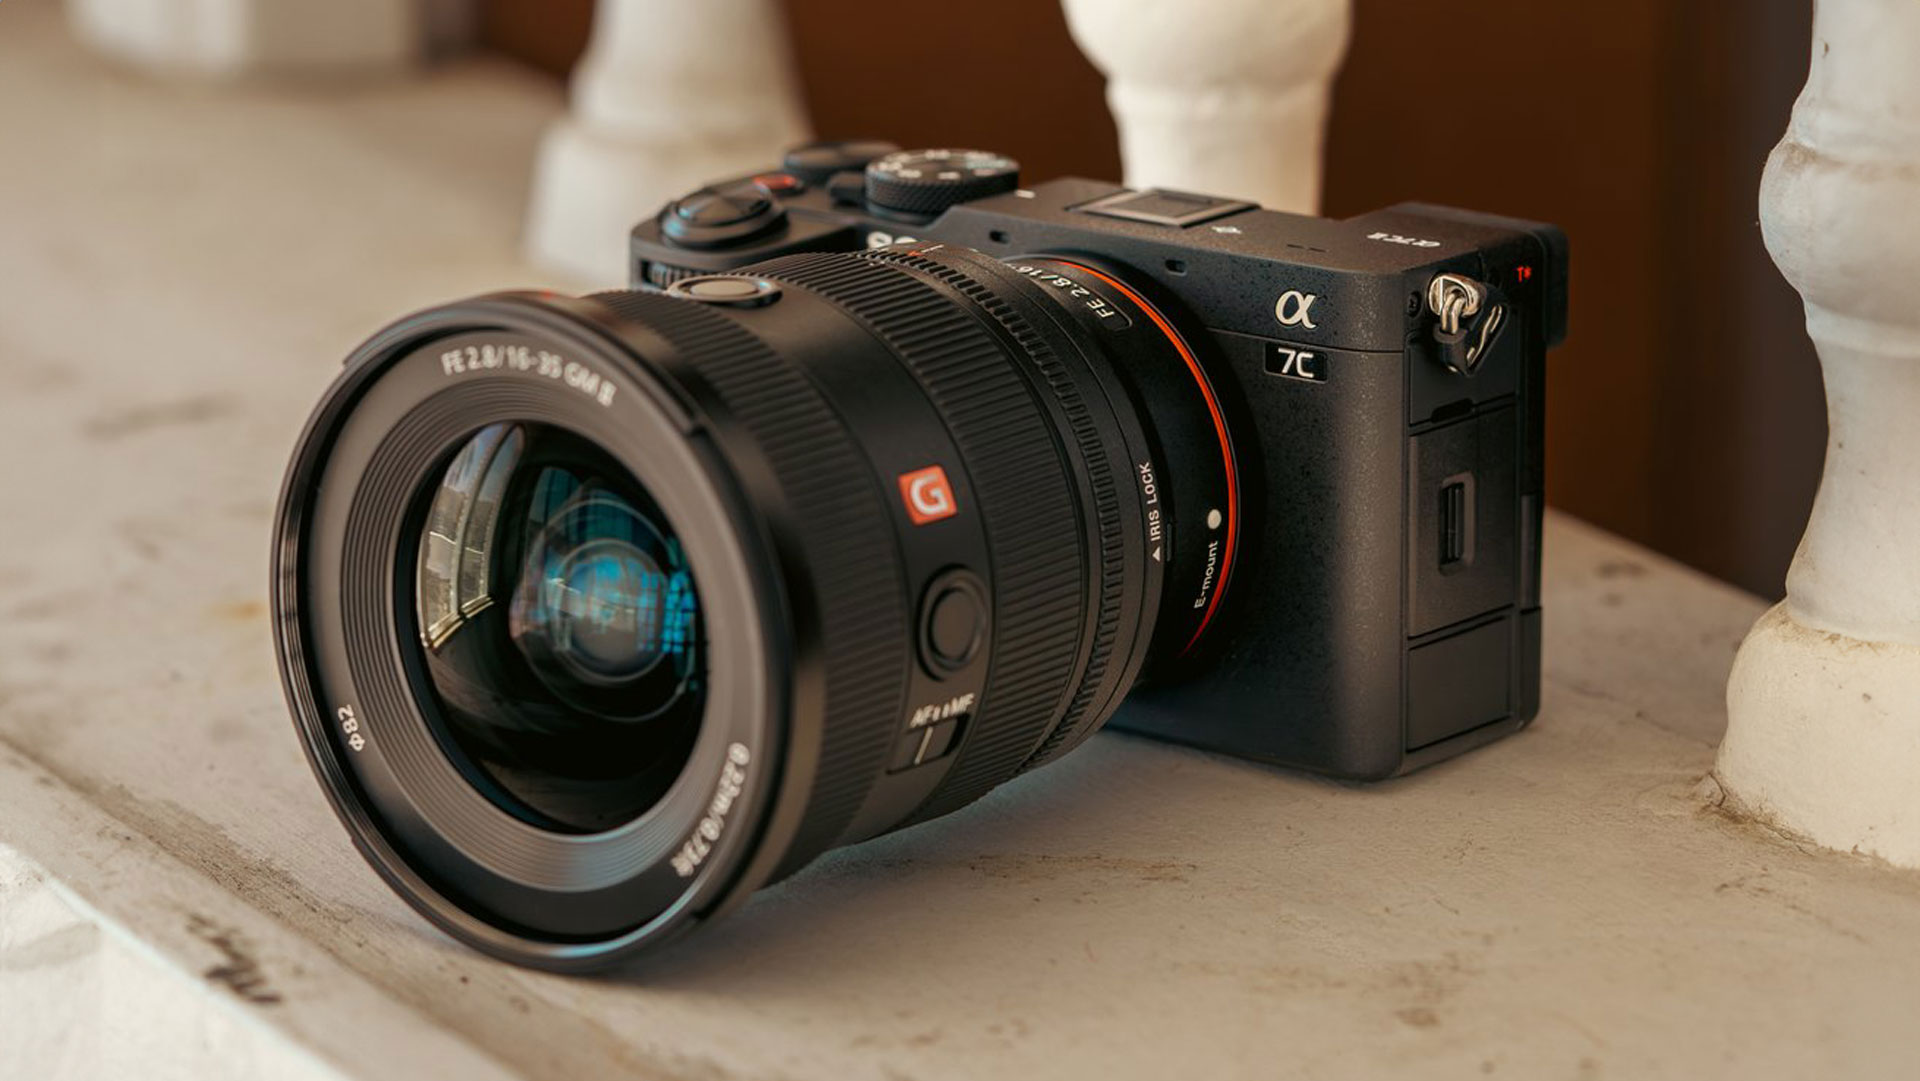 Anuncian la Sony a7C II - Nueva cámara compacta full-frame con video  Super35 4K60 de 33MP, 10 bits y más